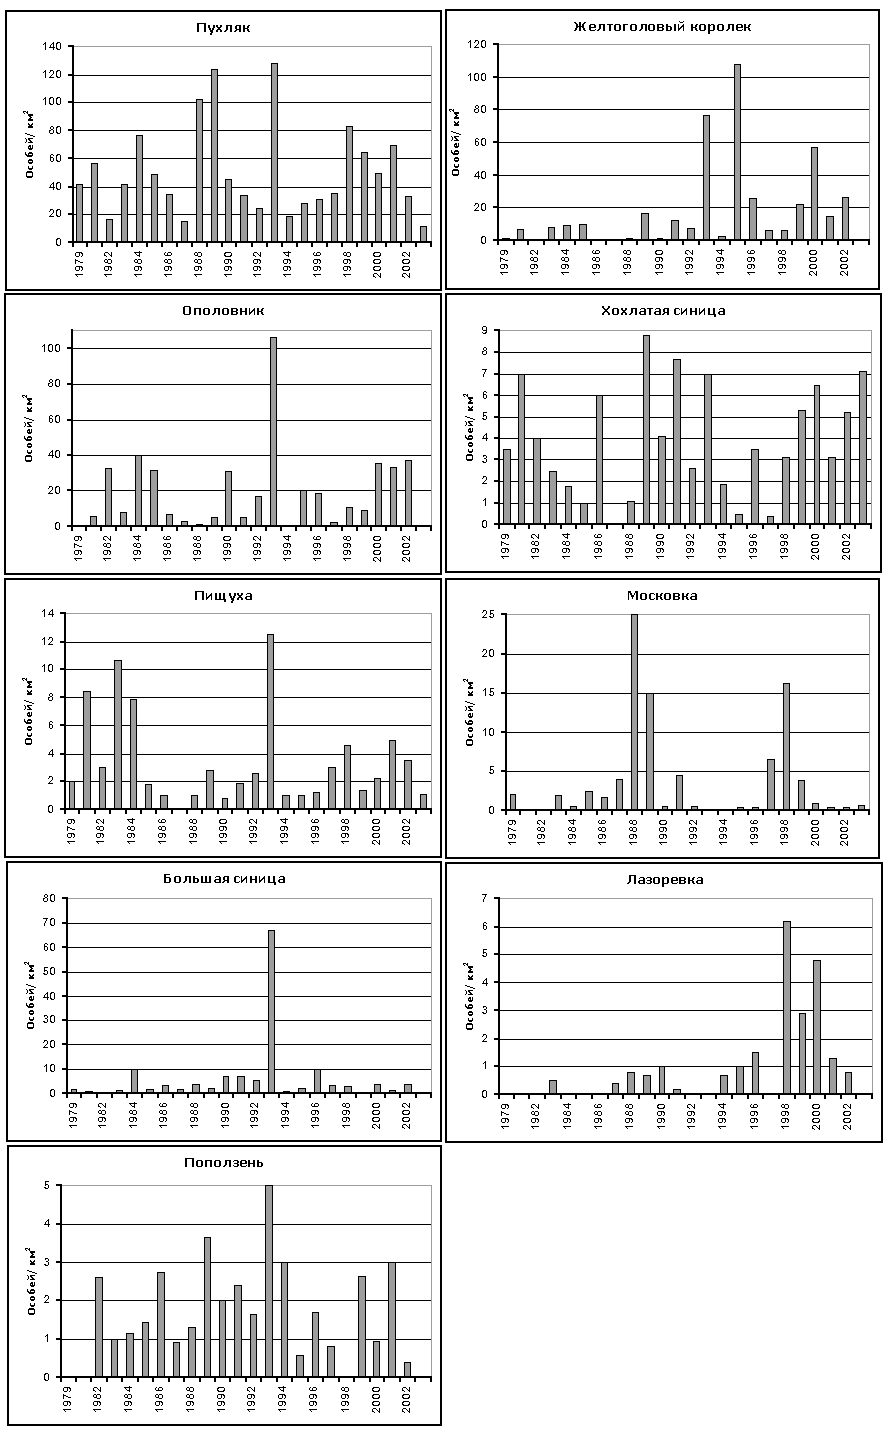 Динамика зимней численности видов синичьих стай (по горизонтальной оси указан год конца зимы)